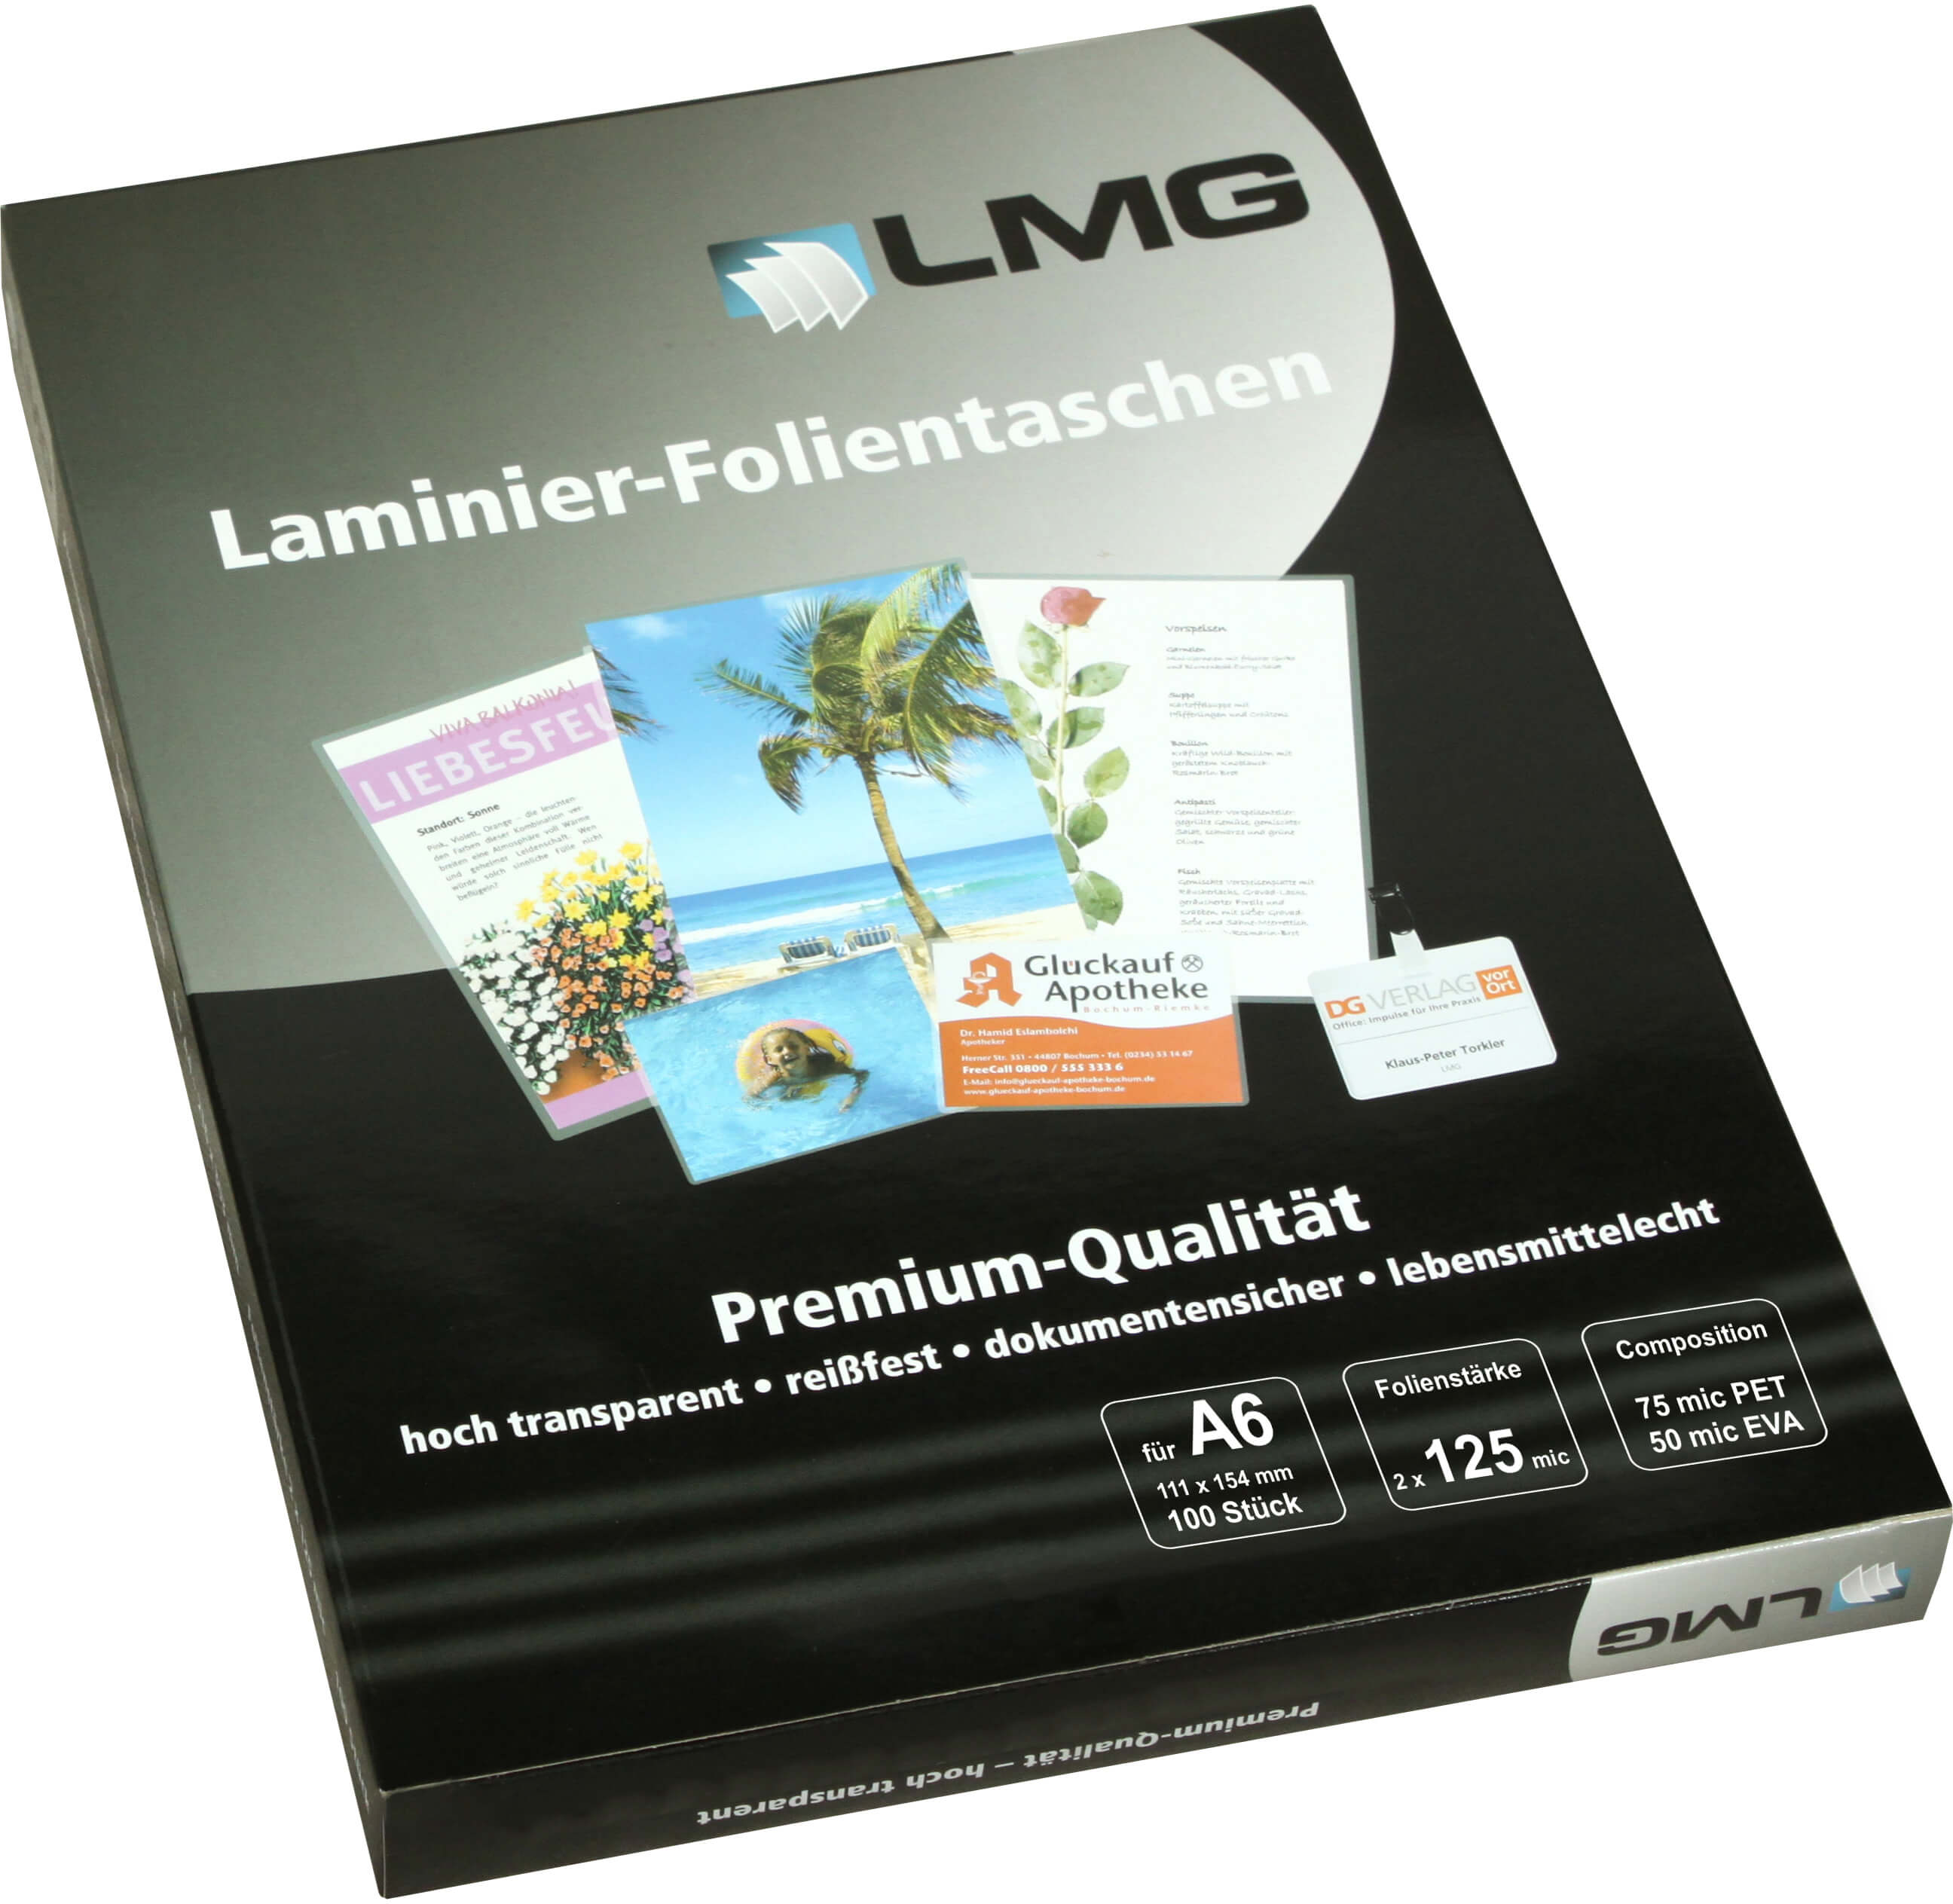 Glänzende Laminierfolien von LMG für DIN A6, 125 Micron | Bestnr. LMGA6-125